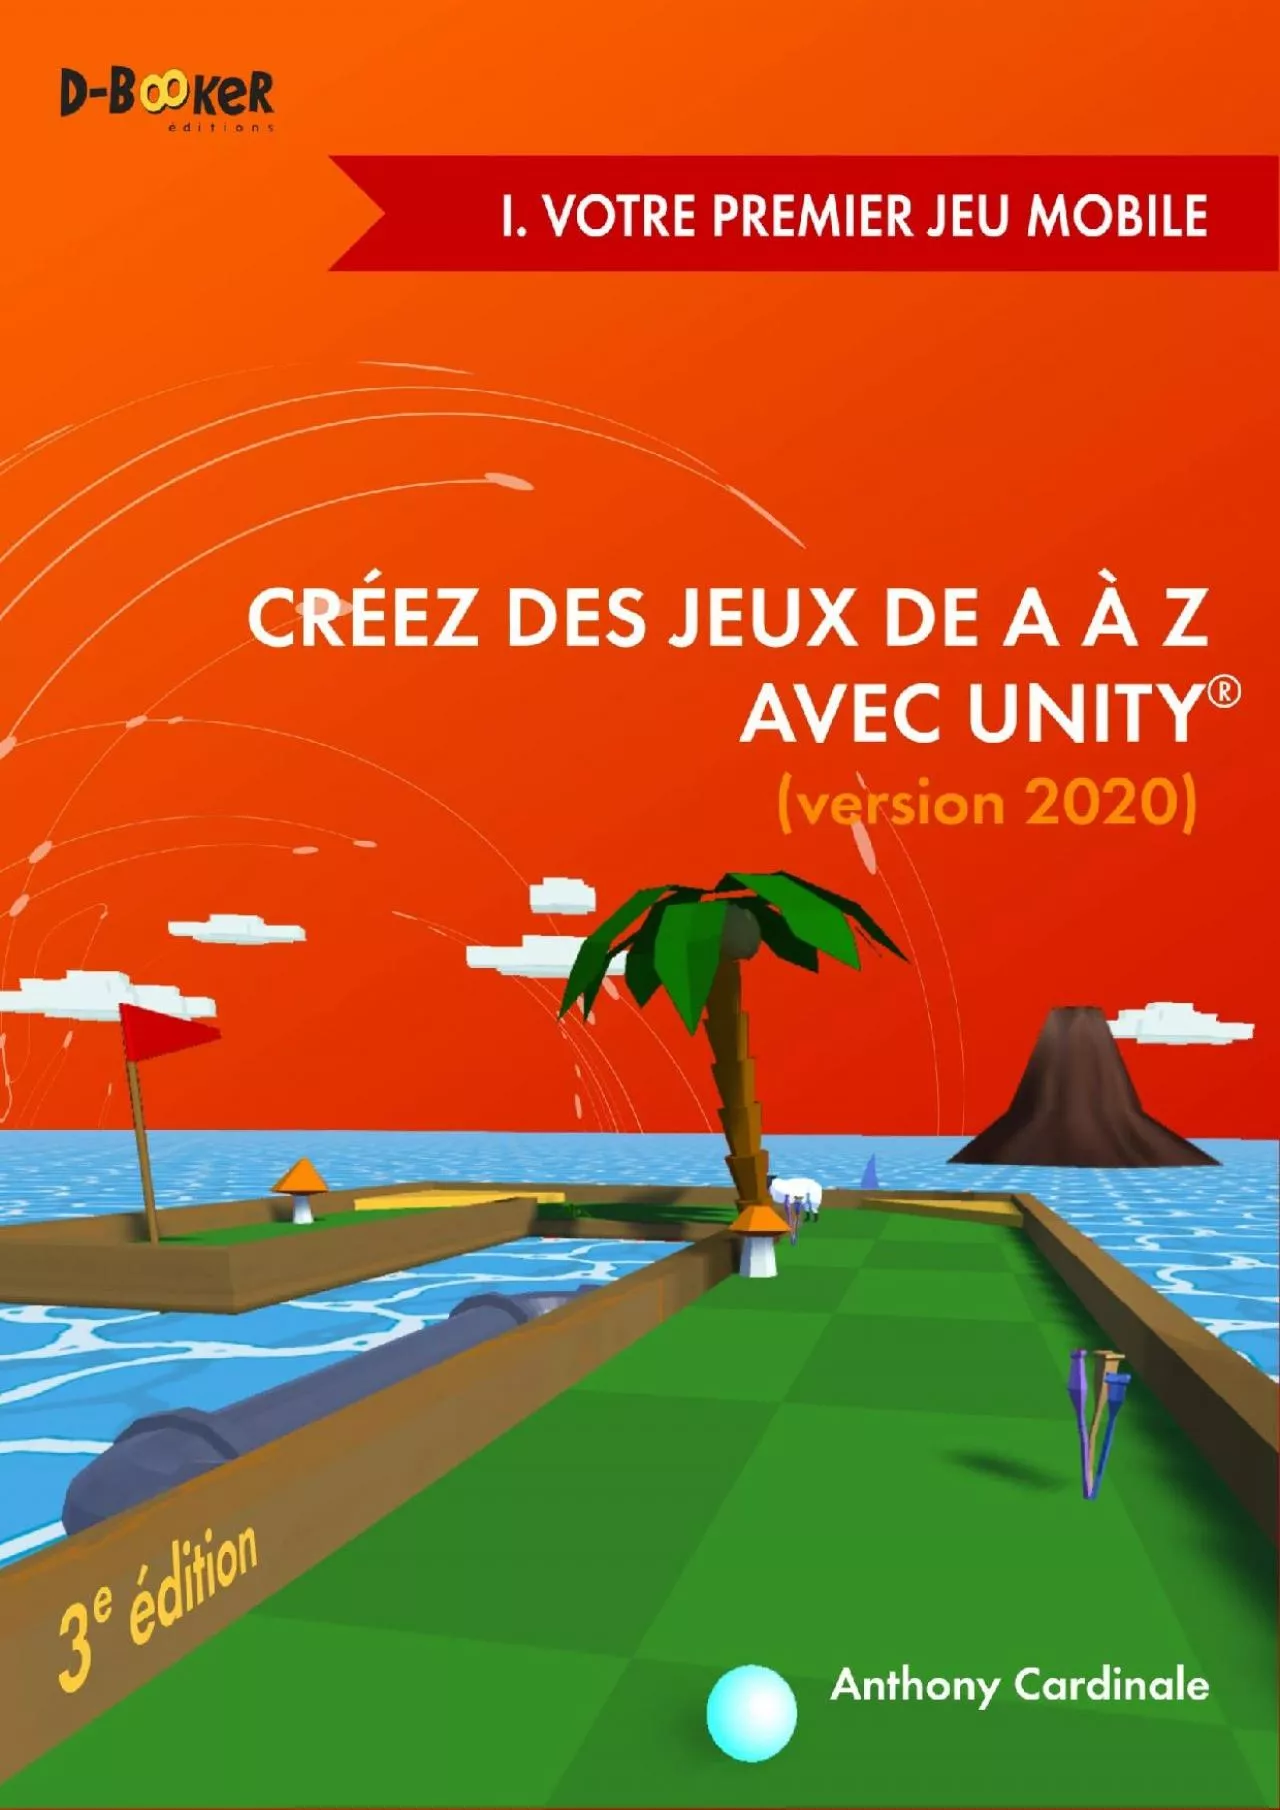 [PDF]-Créez des jeux de A à Z avec Unity - I. Votre premier jeu mobile: (version 2020)